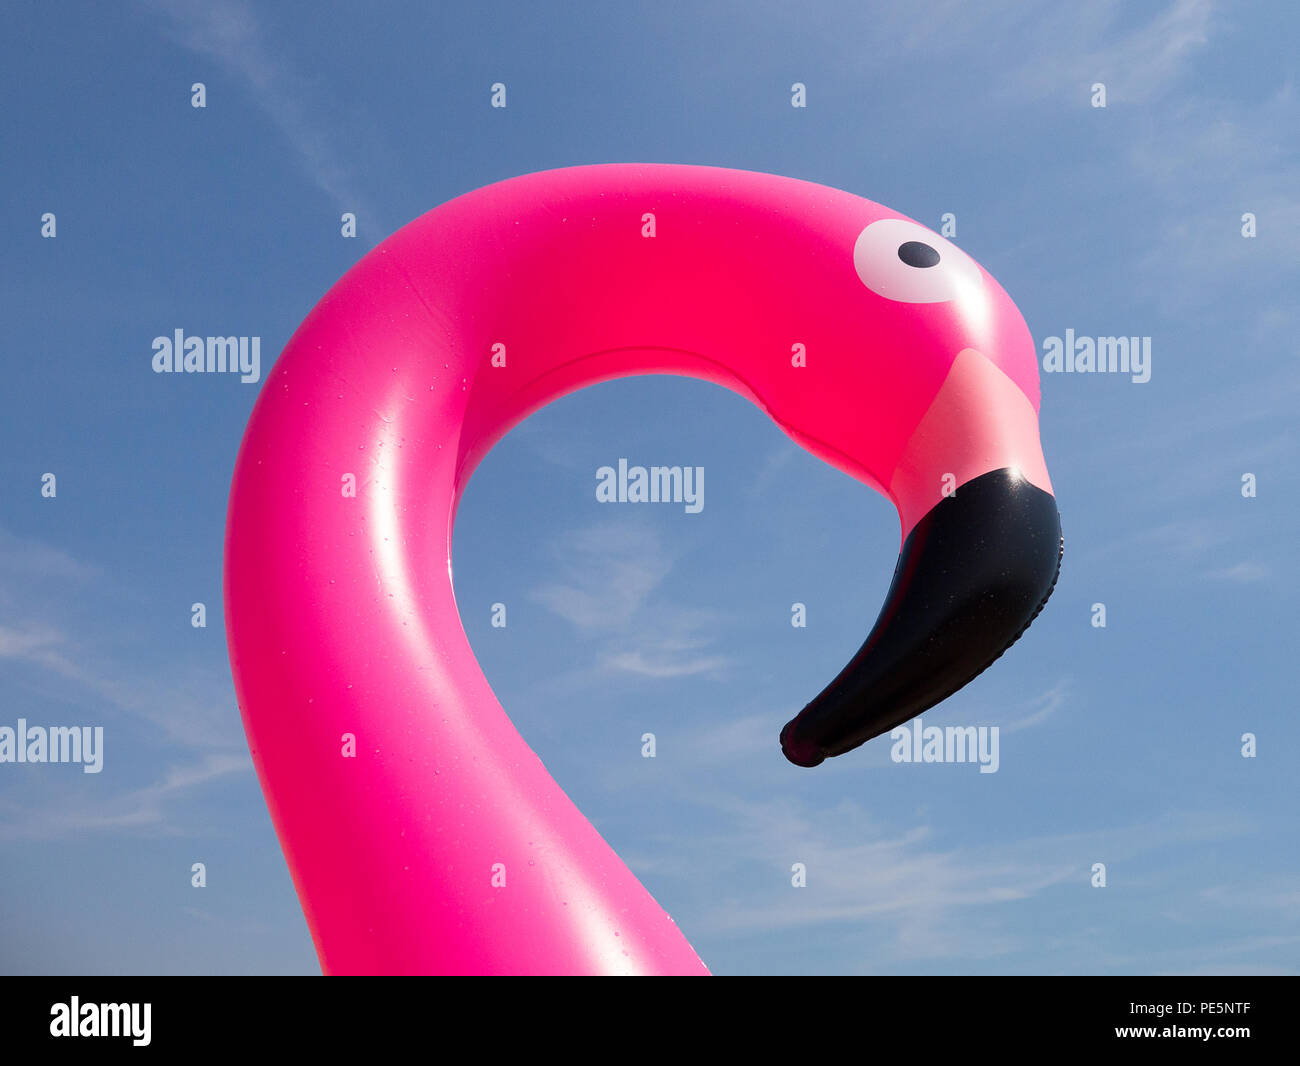 Farbe der Kopf und Hals einer rosa Aufblasbare Flamingo, geschossen von unten gegen einen blauen Himmel mit schwachen wispy Wolken Stockfoto